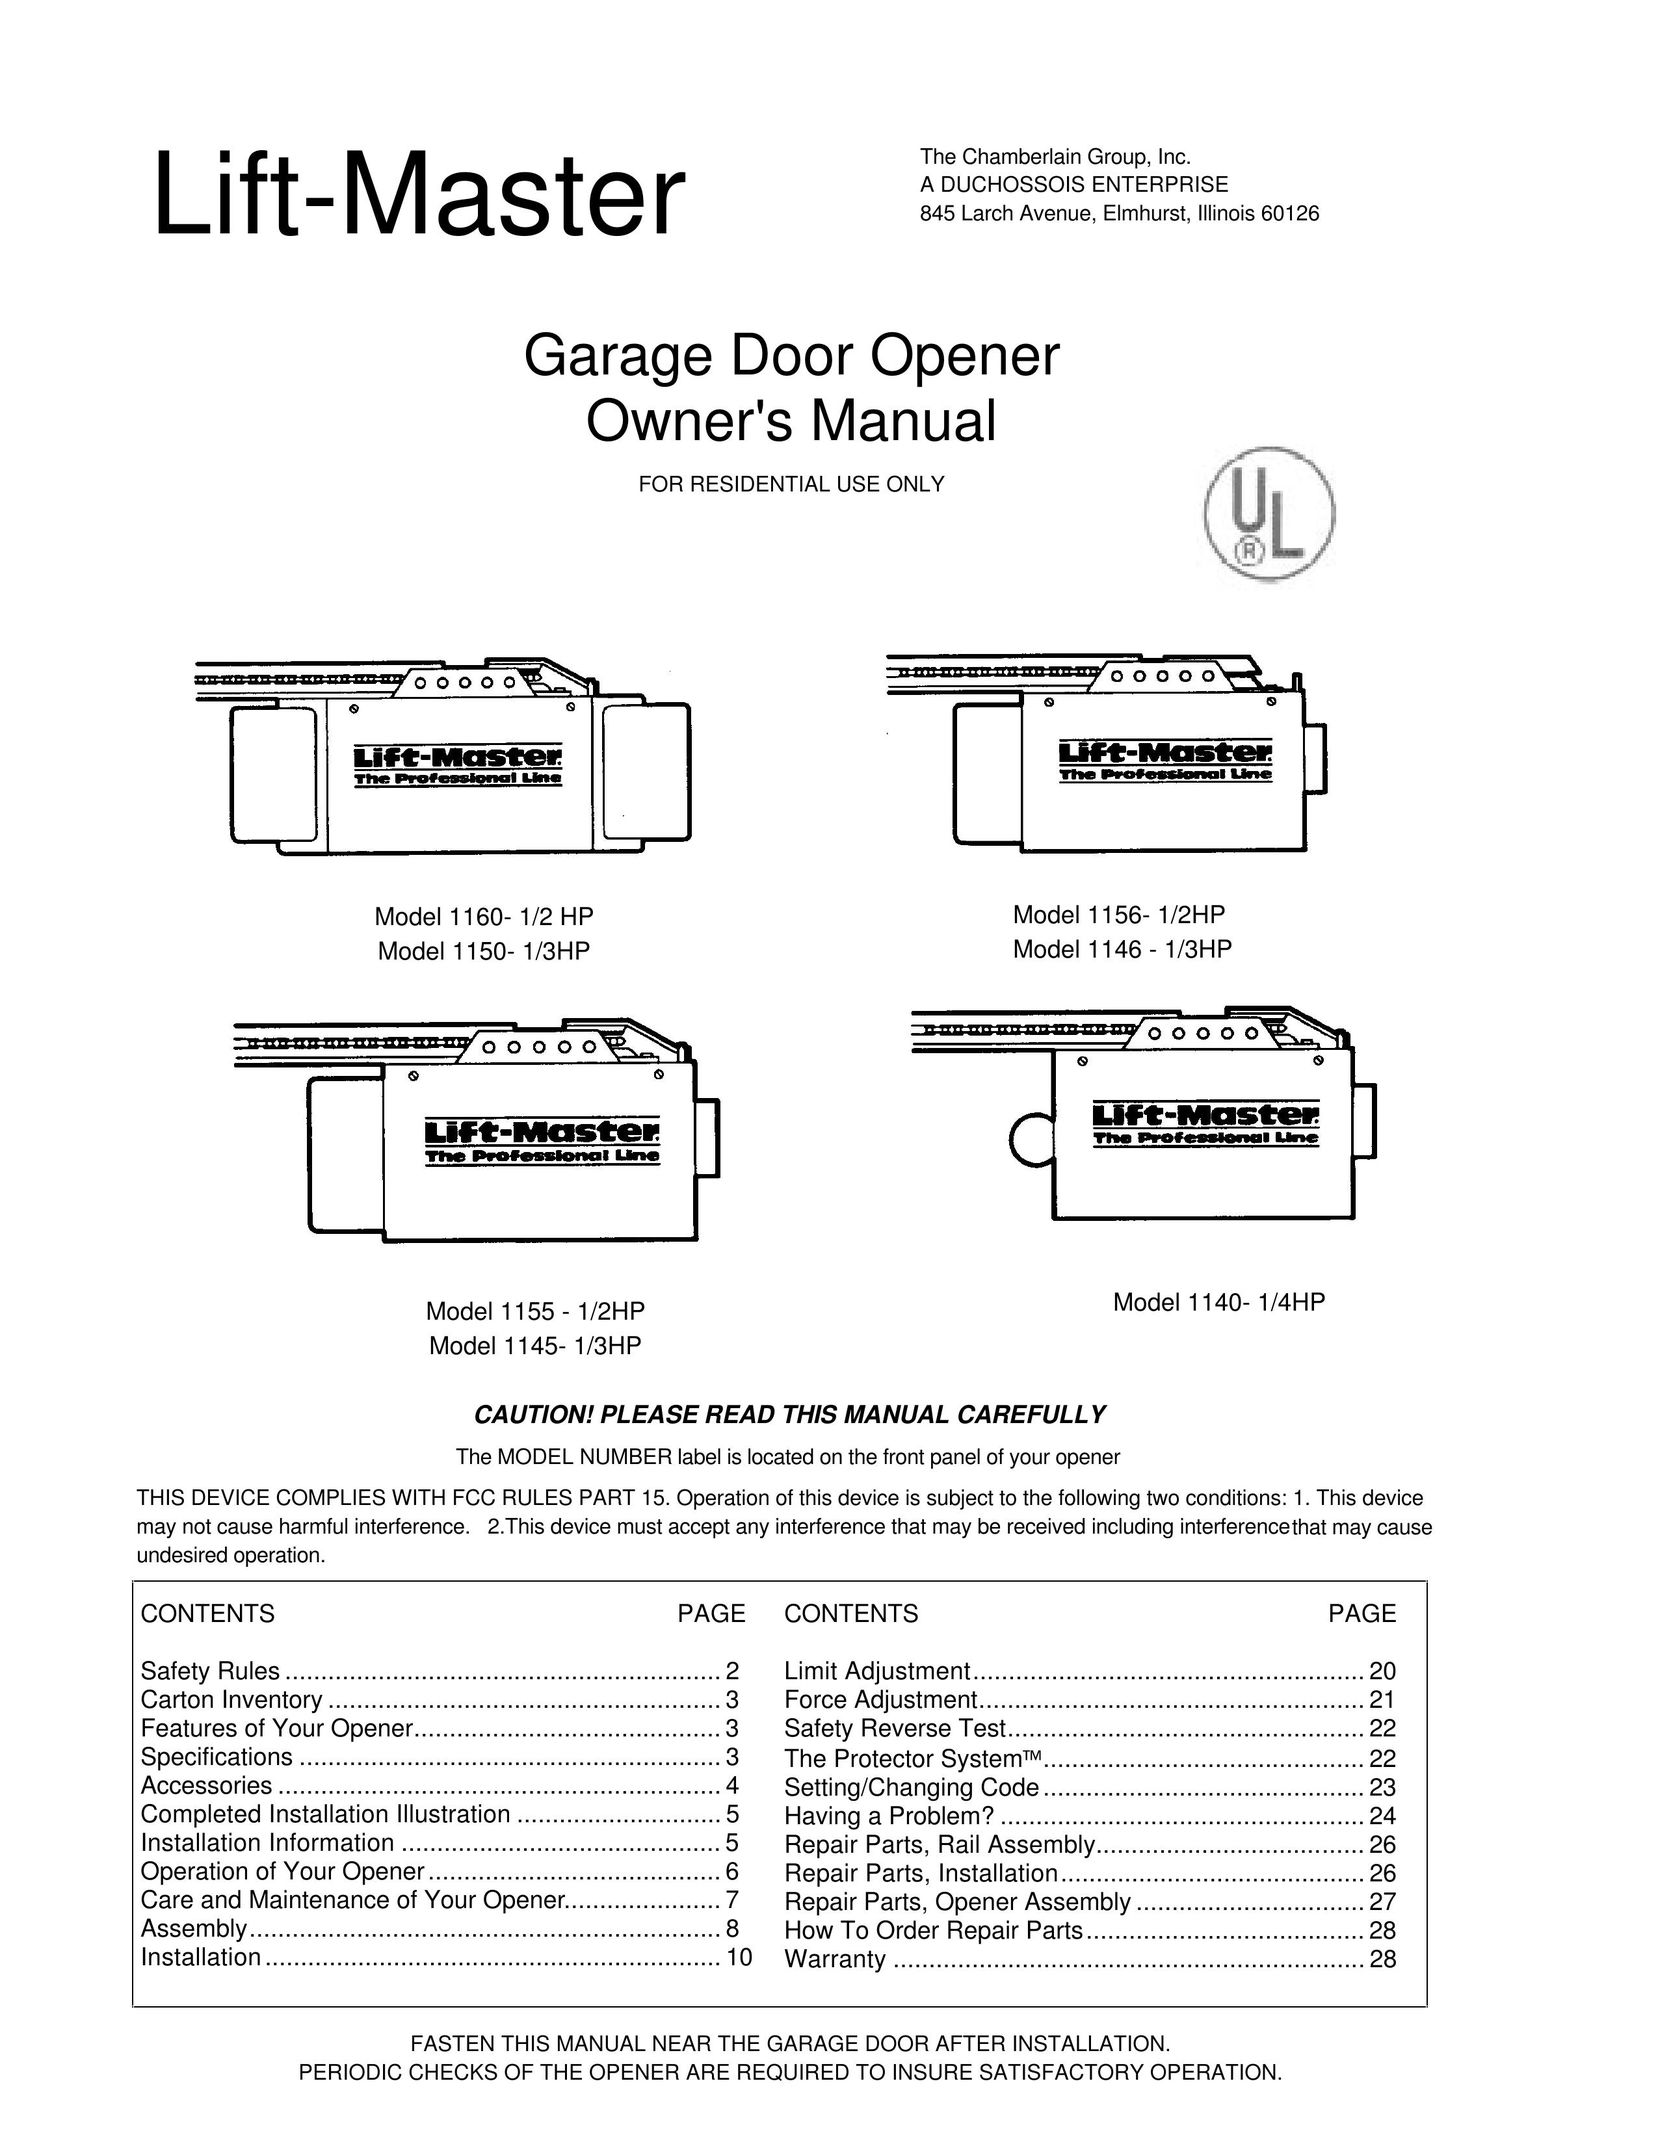 Chamberlain 1155 - 1/2HP Garage Door Opener User Manual